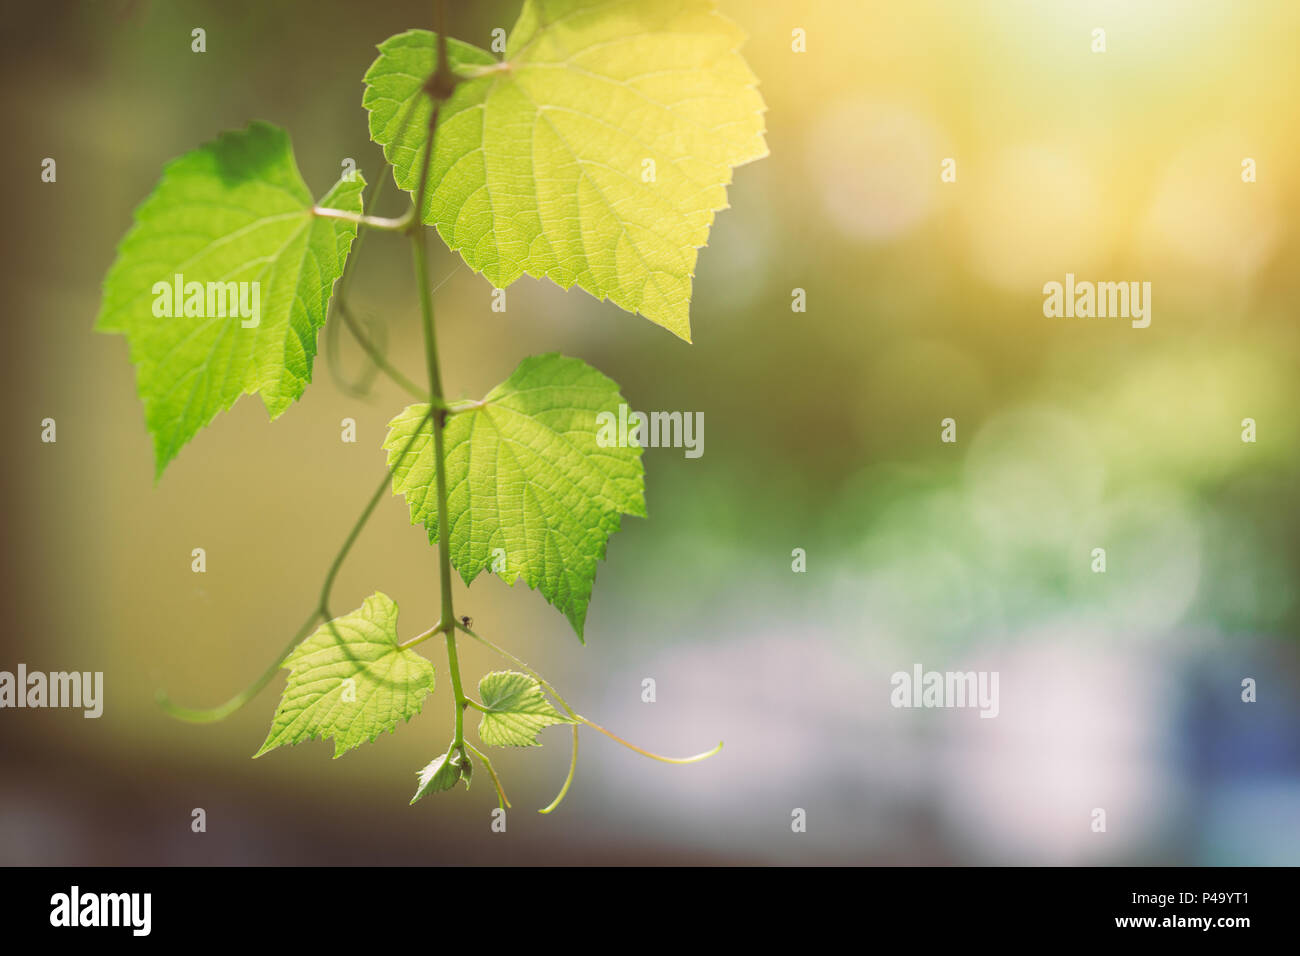 Wissenschaft der Ökologie grün Konzept. Closeup grünes Weinblatt Textur mit Chlorophyll und Prozess der Photosynthese mit Sonne. Stockfoto